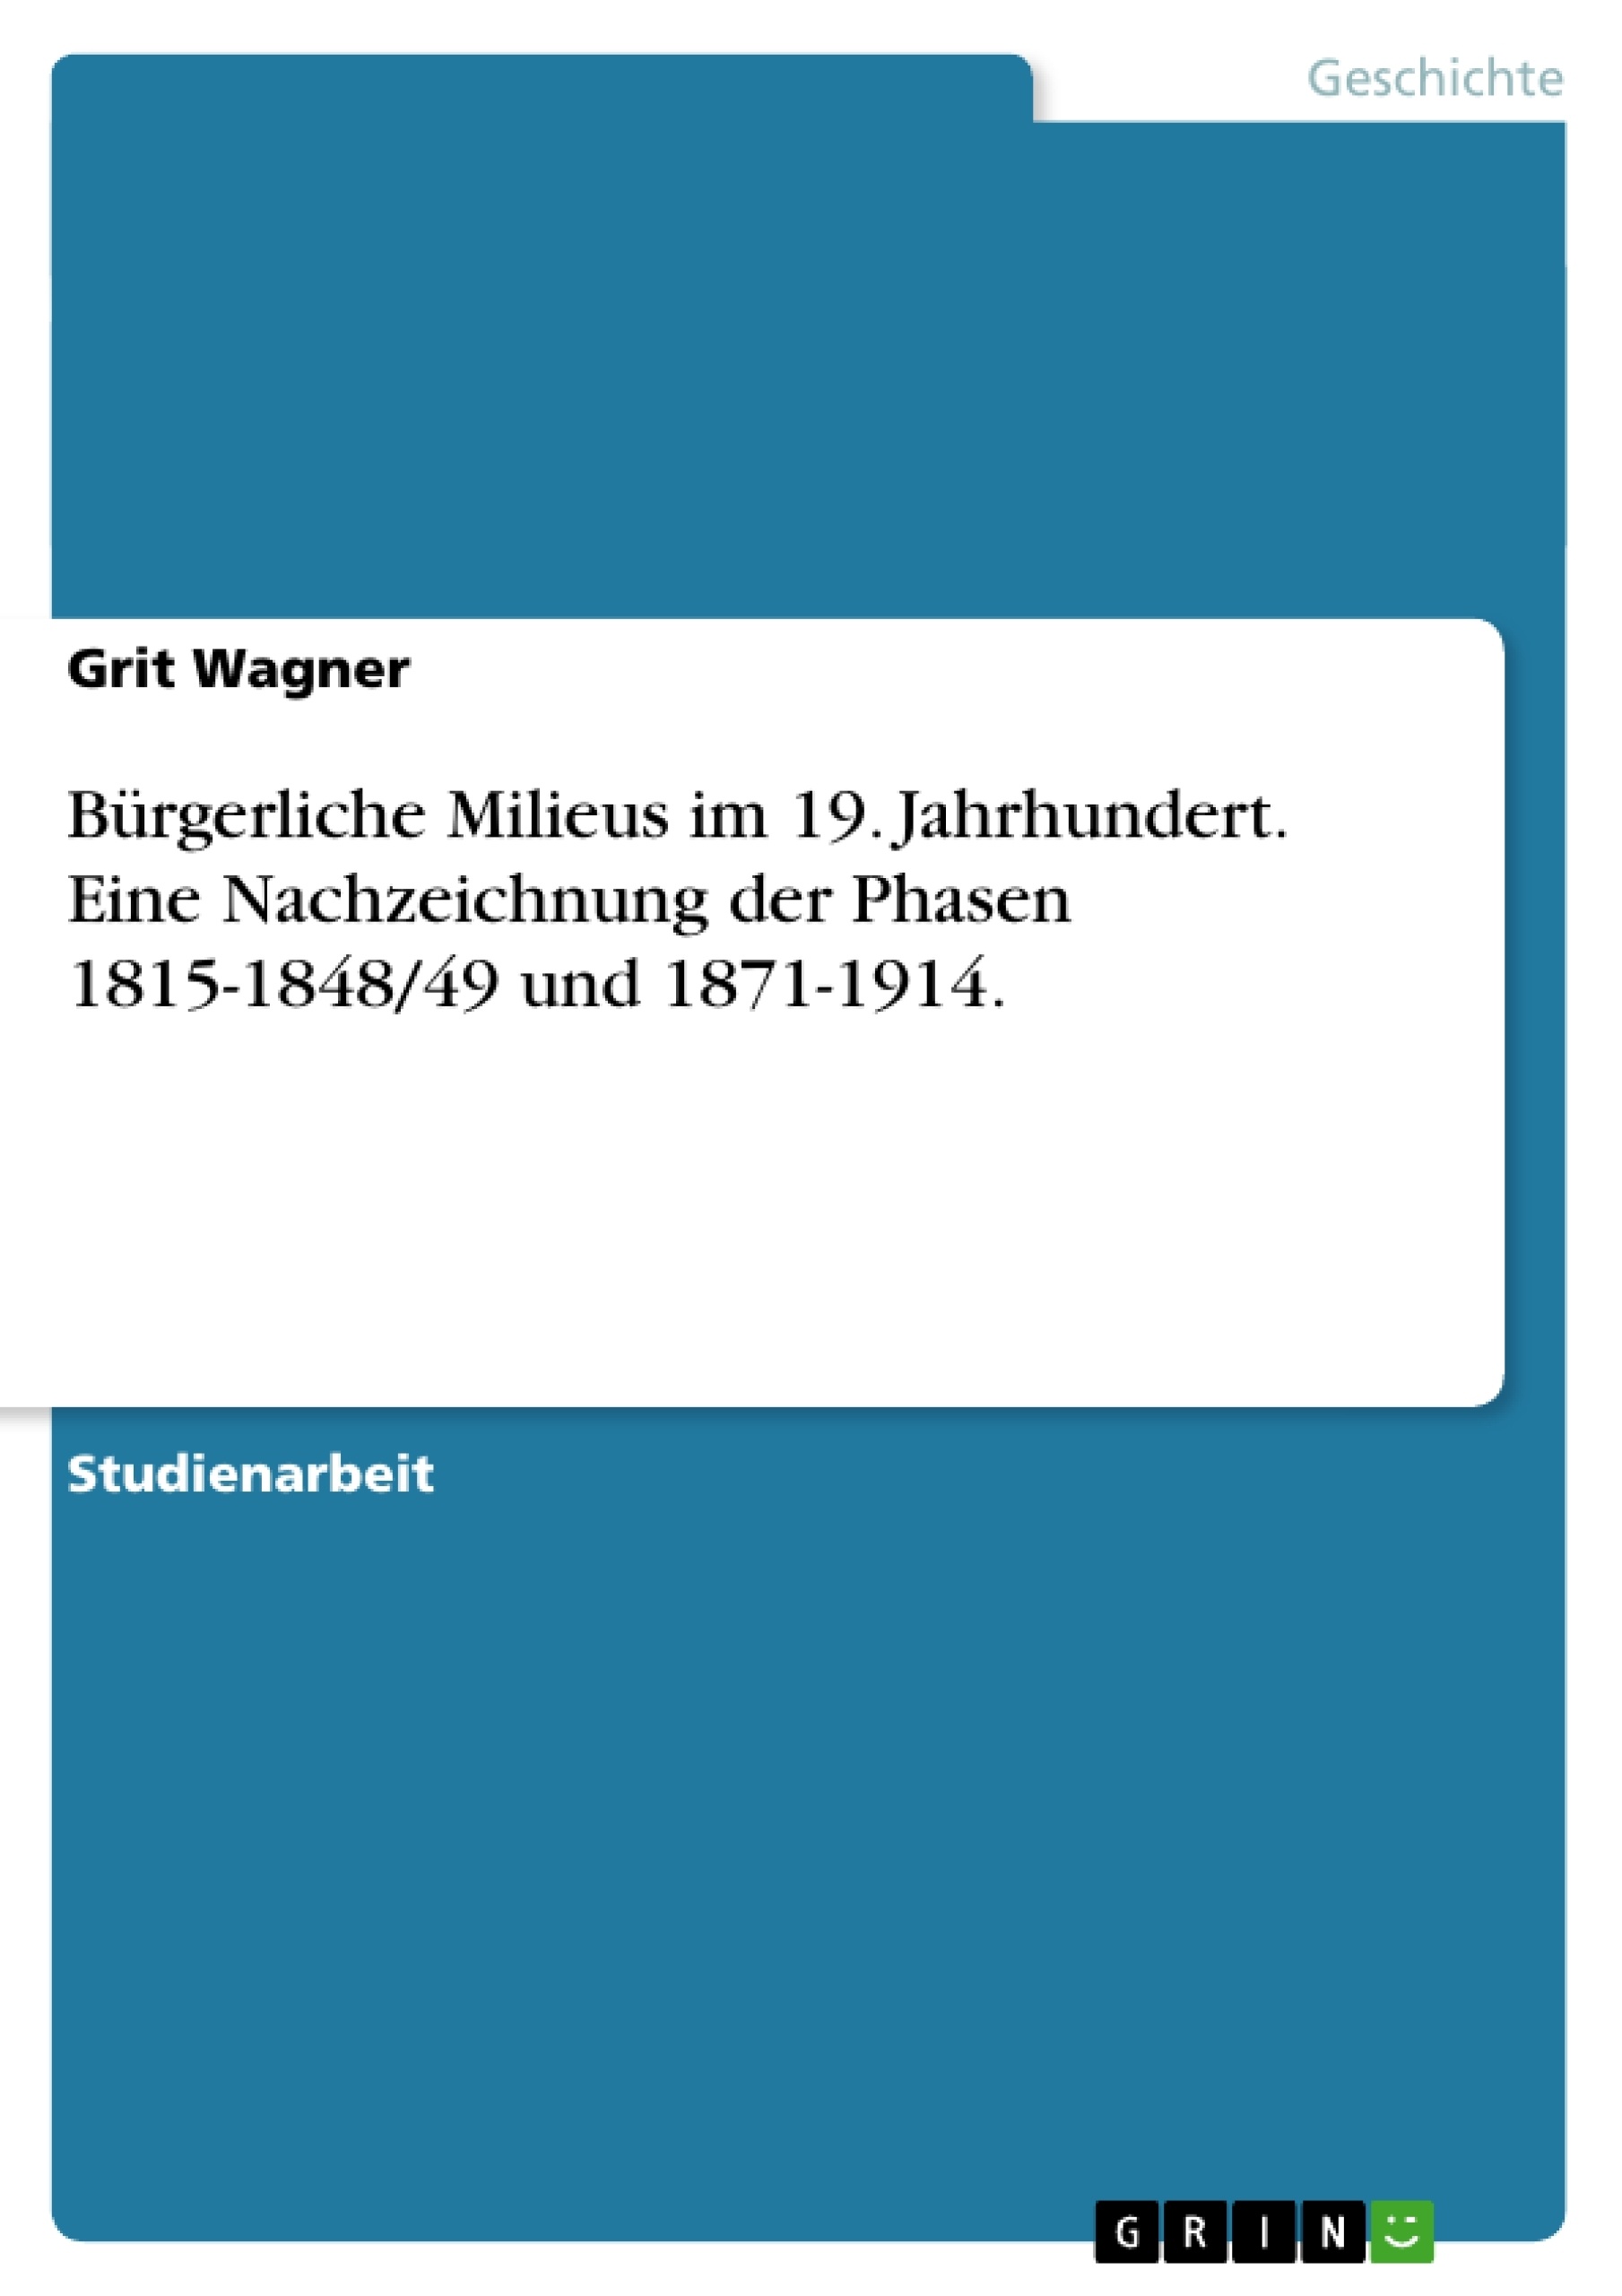 Title: Bürgerliche Milieus im 19. Jahrhundert. Eine Nachzeichnung der Phasen 1815-1848/49 und 1871-1914.